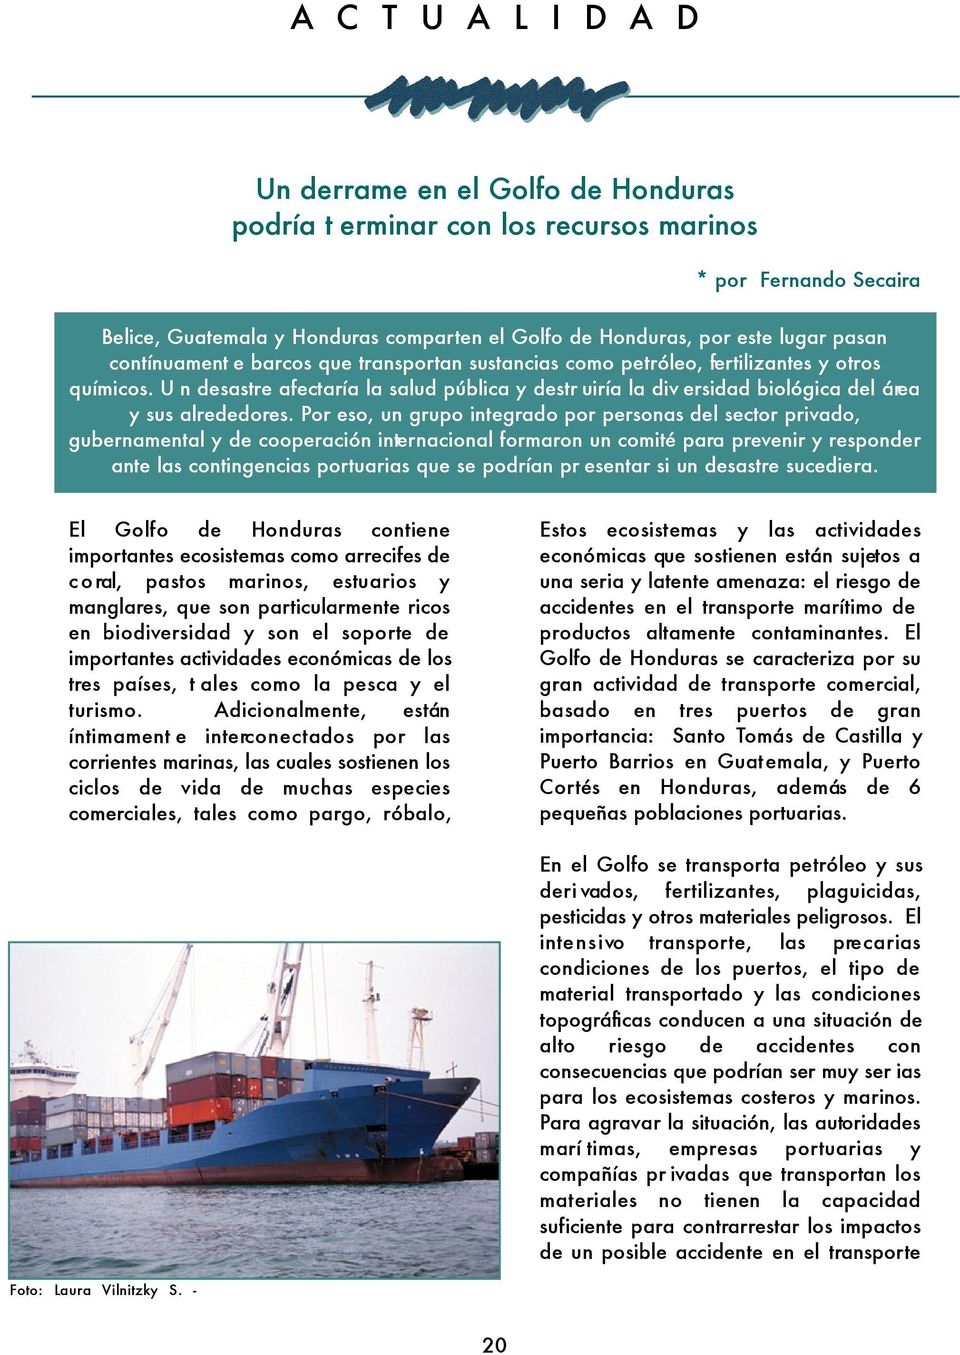 Por eso, un grupo integrado por personas del sector privado, gubernamental y de cooperación internacional formaron un comité para prevenir y responder ante las contingencias portuarias que se podrían